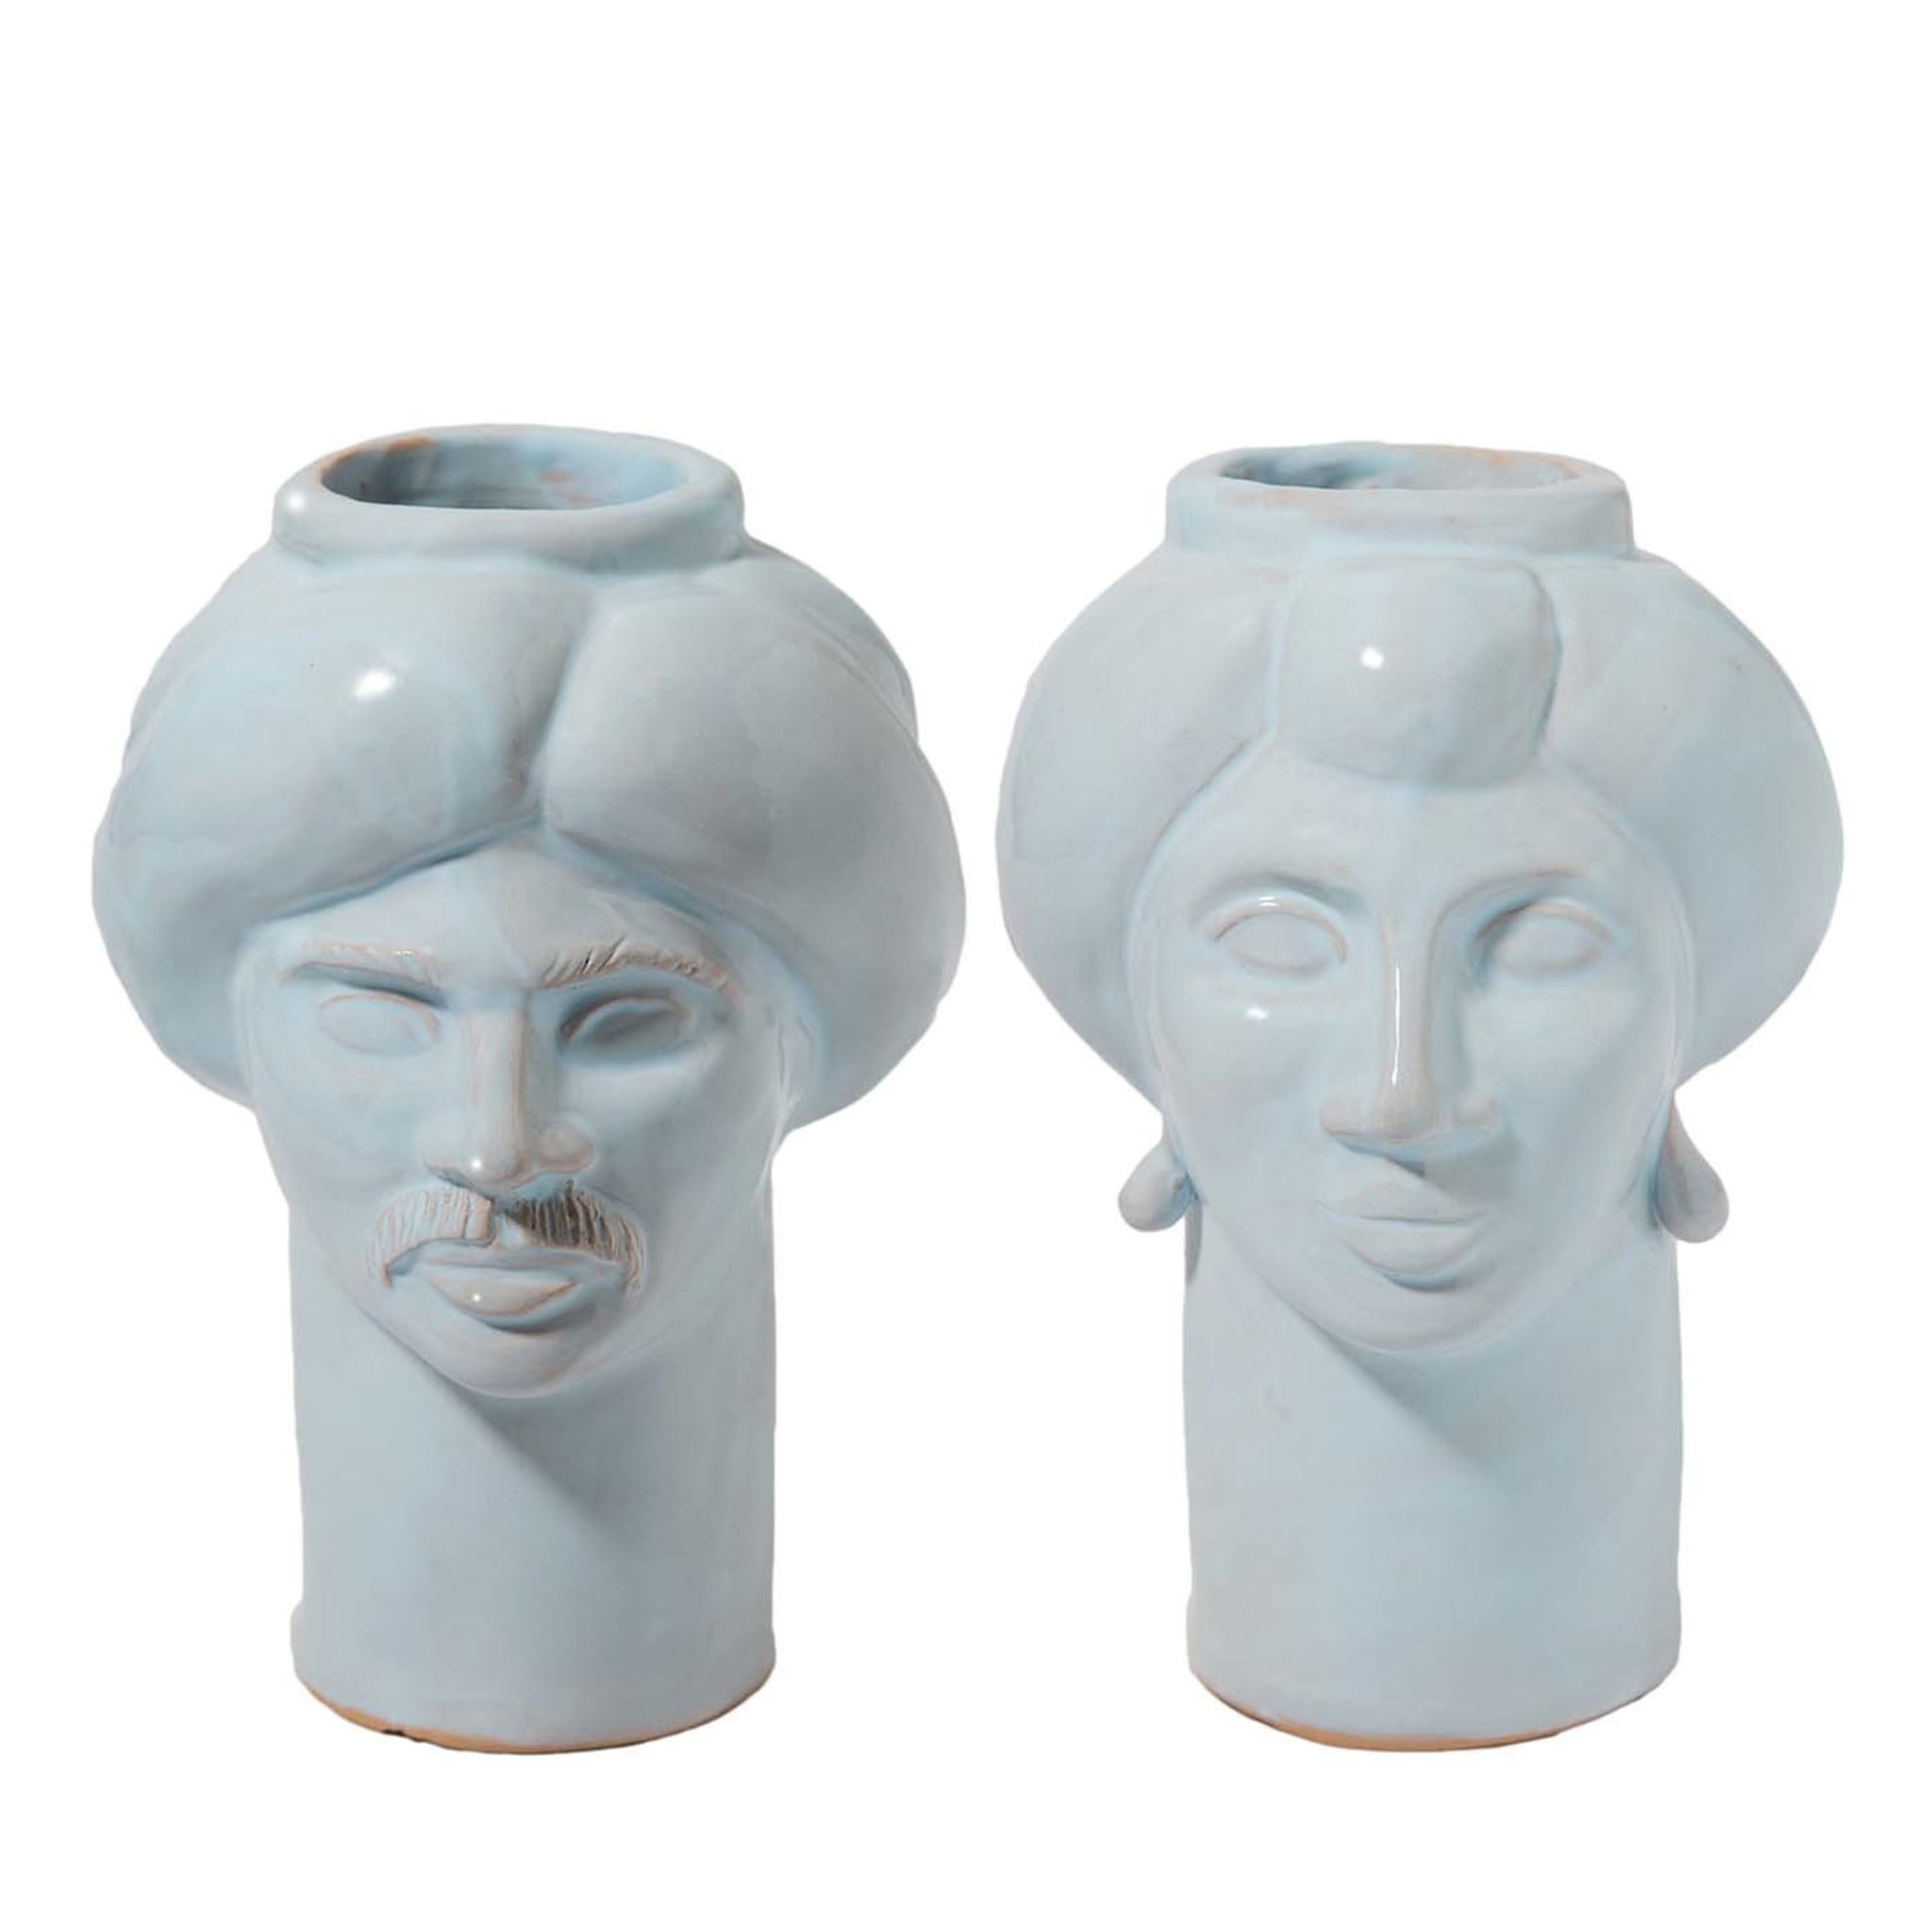 Solimano & Roxelana White Vases - Main view